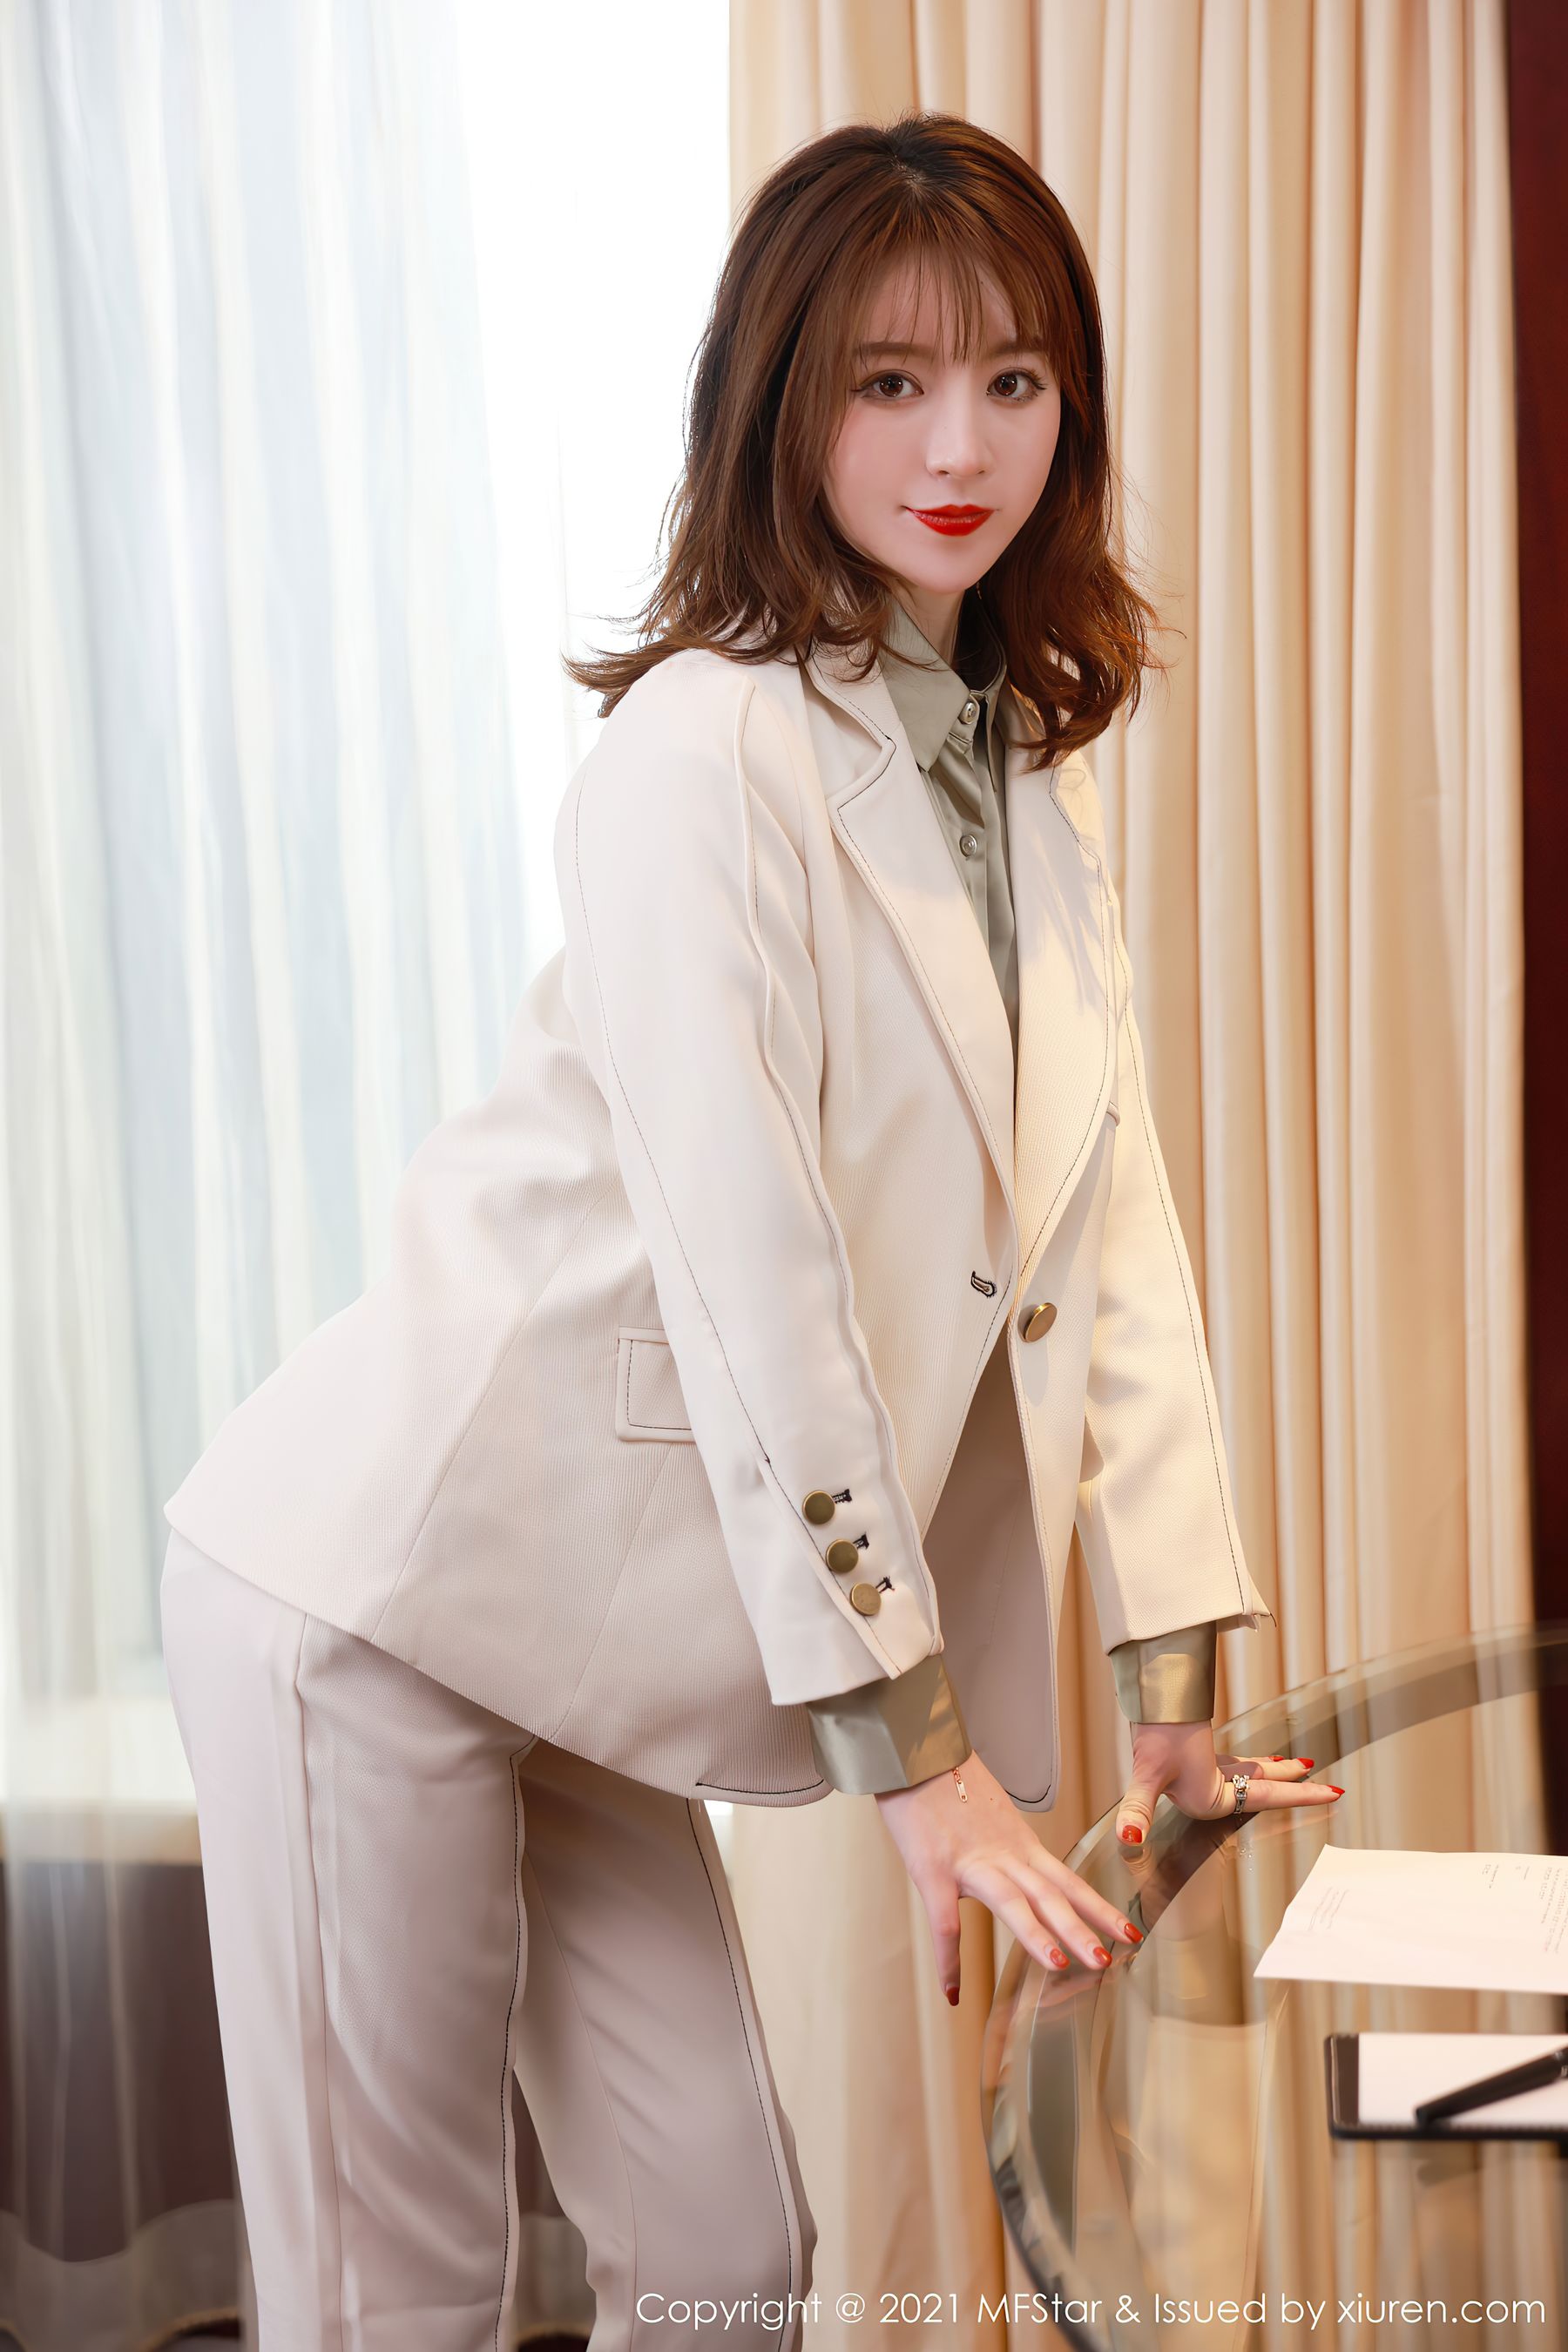 [Model Academy Mfstar] Vol.485 Yoo Youyou – Elegant End Focus on Workplace